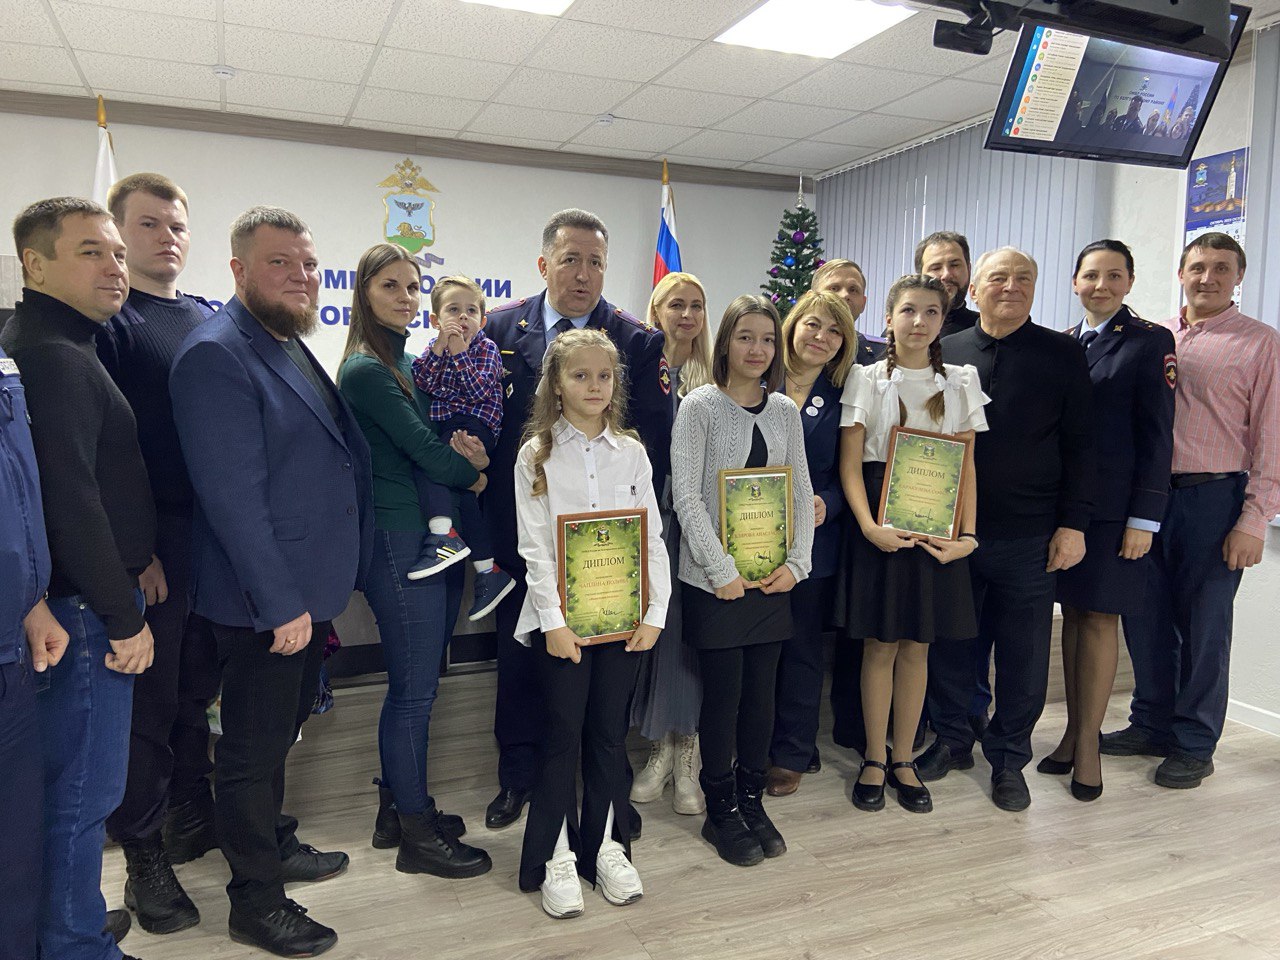 В ОМВД России по Белгородскому району состоялось награждение детей, сделавших лучшие новогодние поделки.